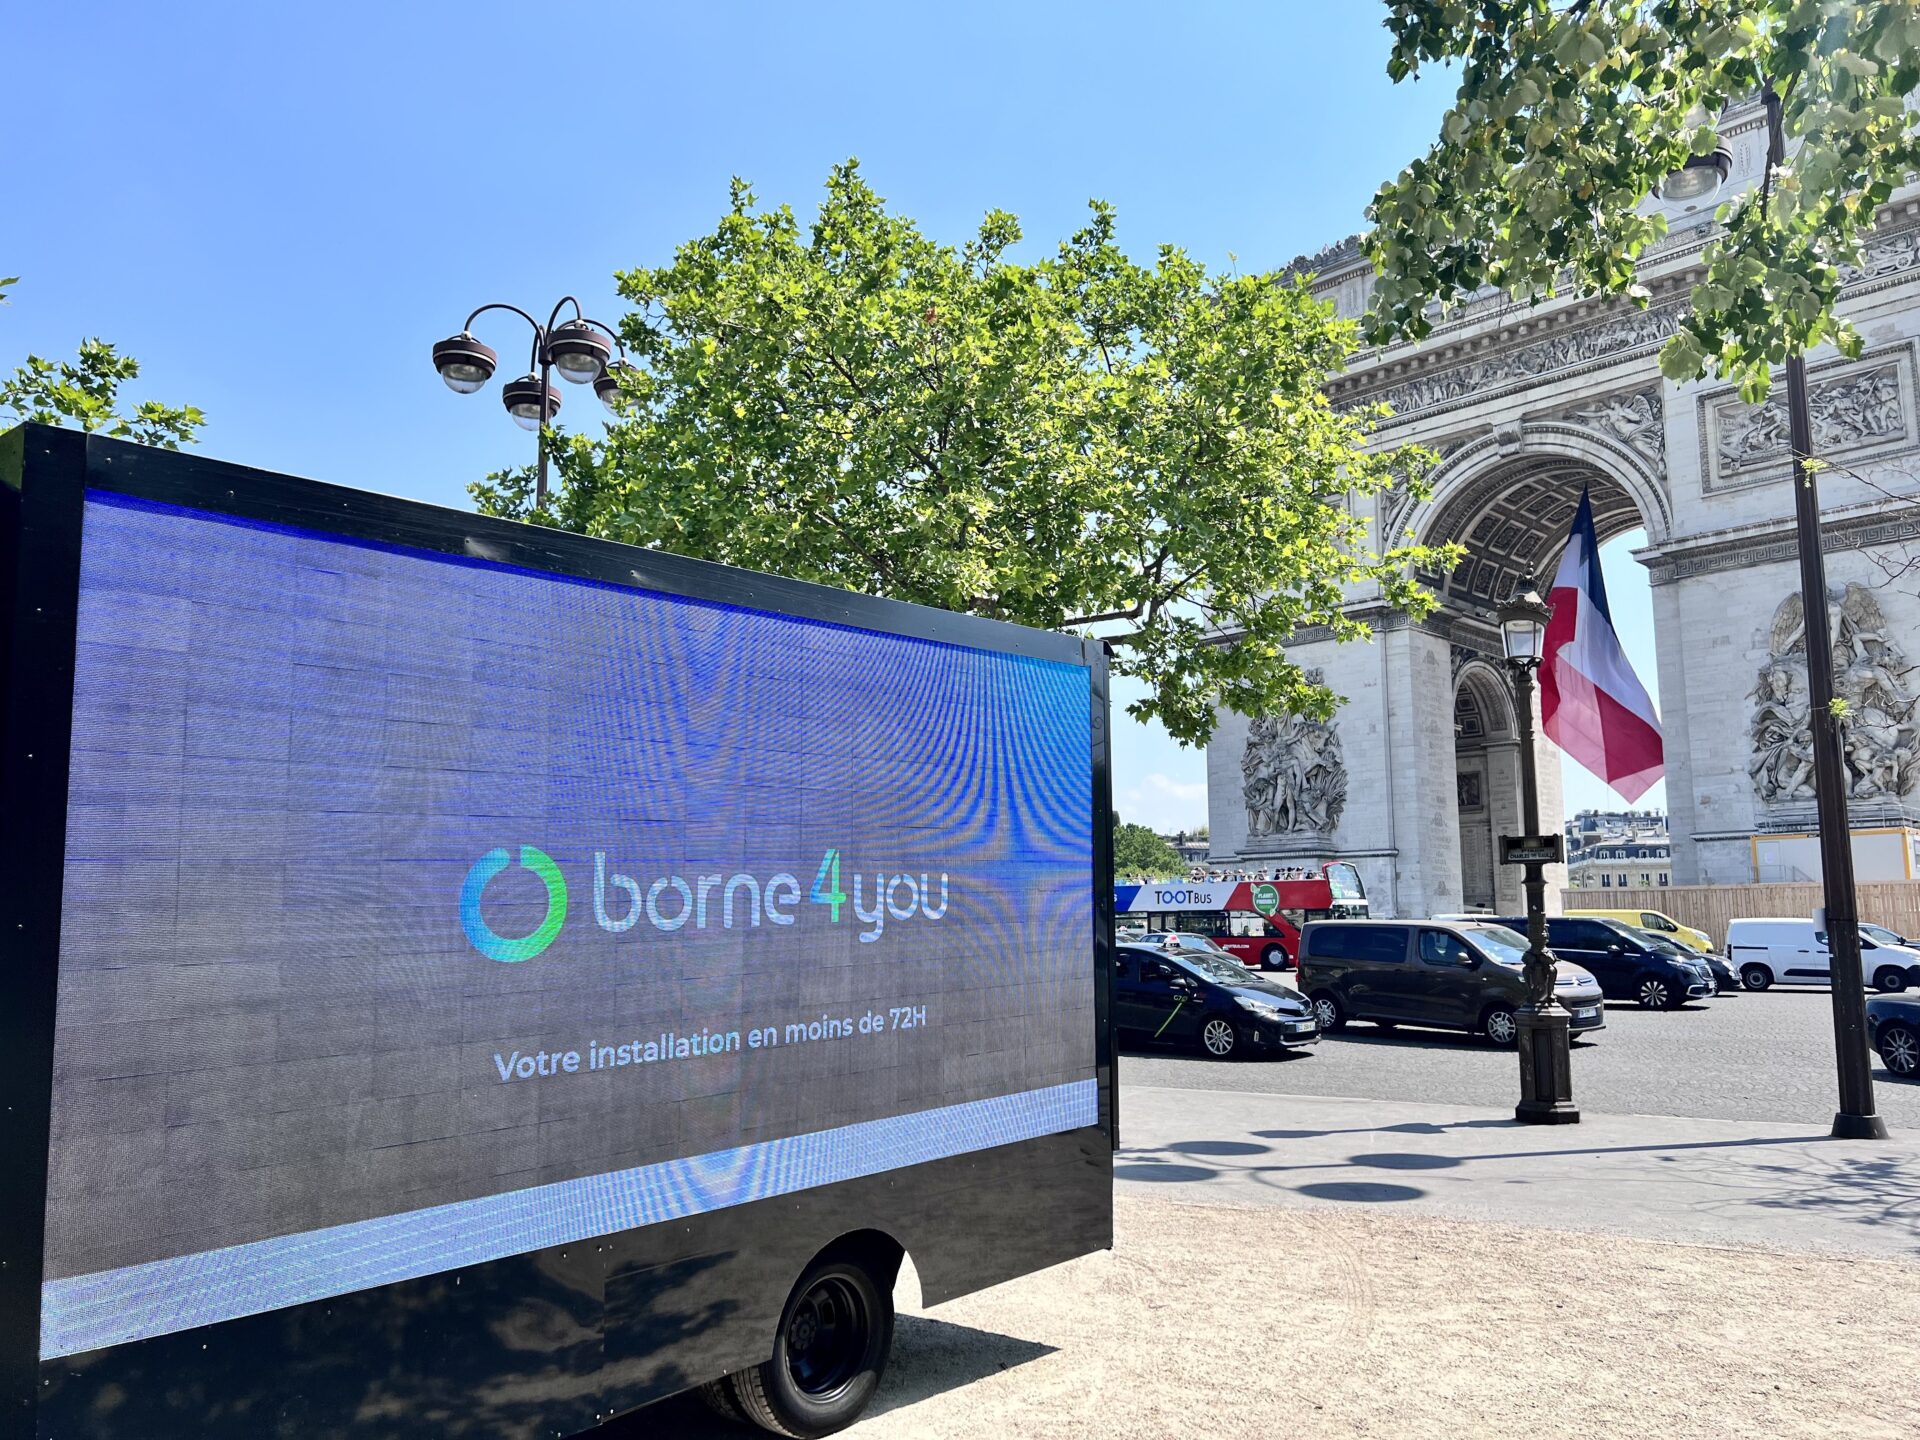 Communiqué : Borne4You accélère son déploiement en France et annonce de nouveaux objectifs ambitieux